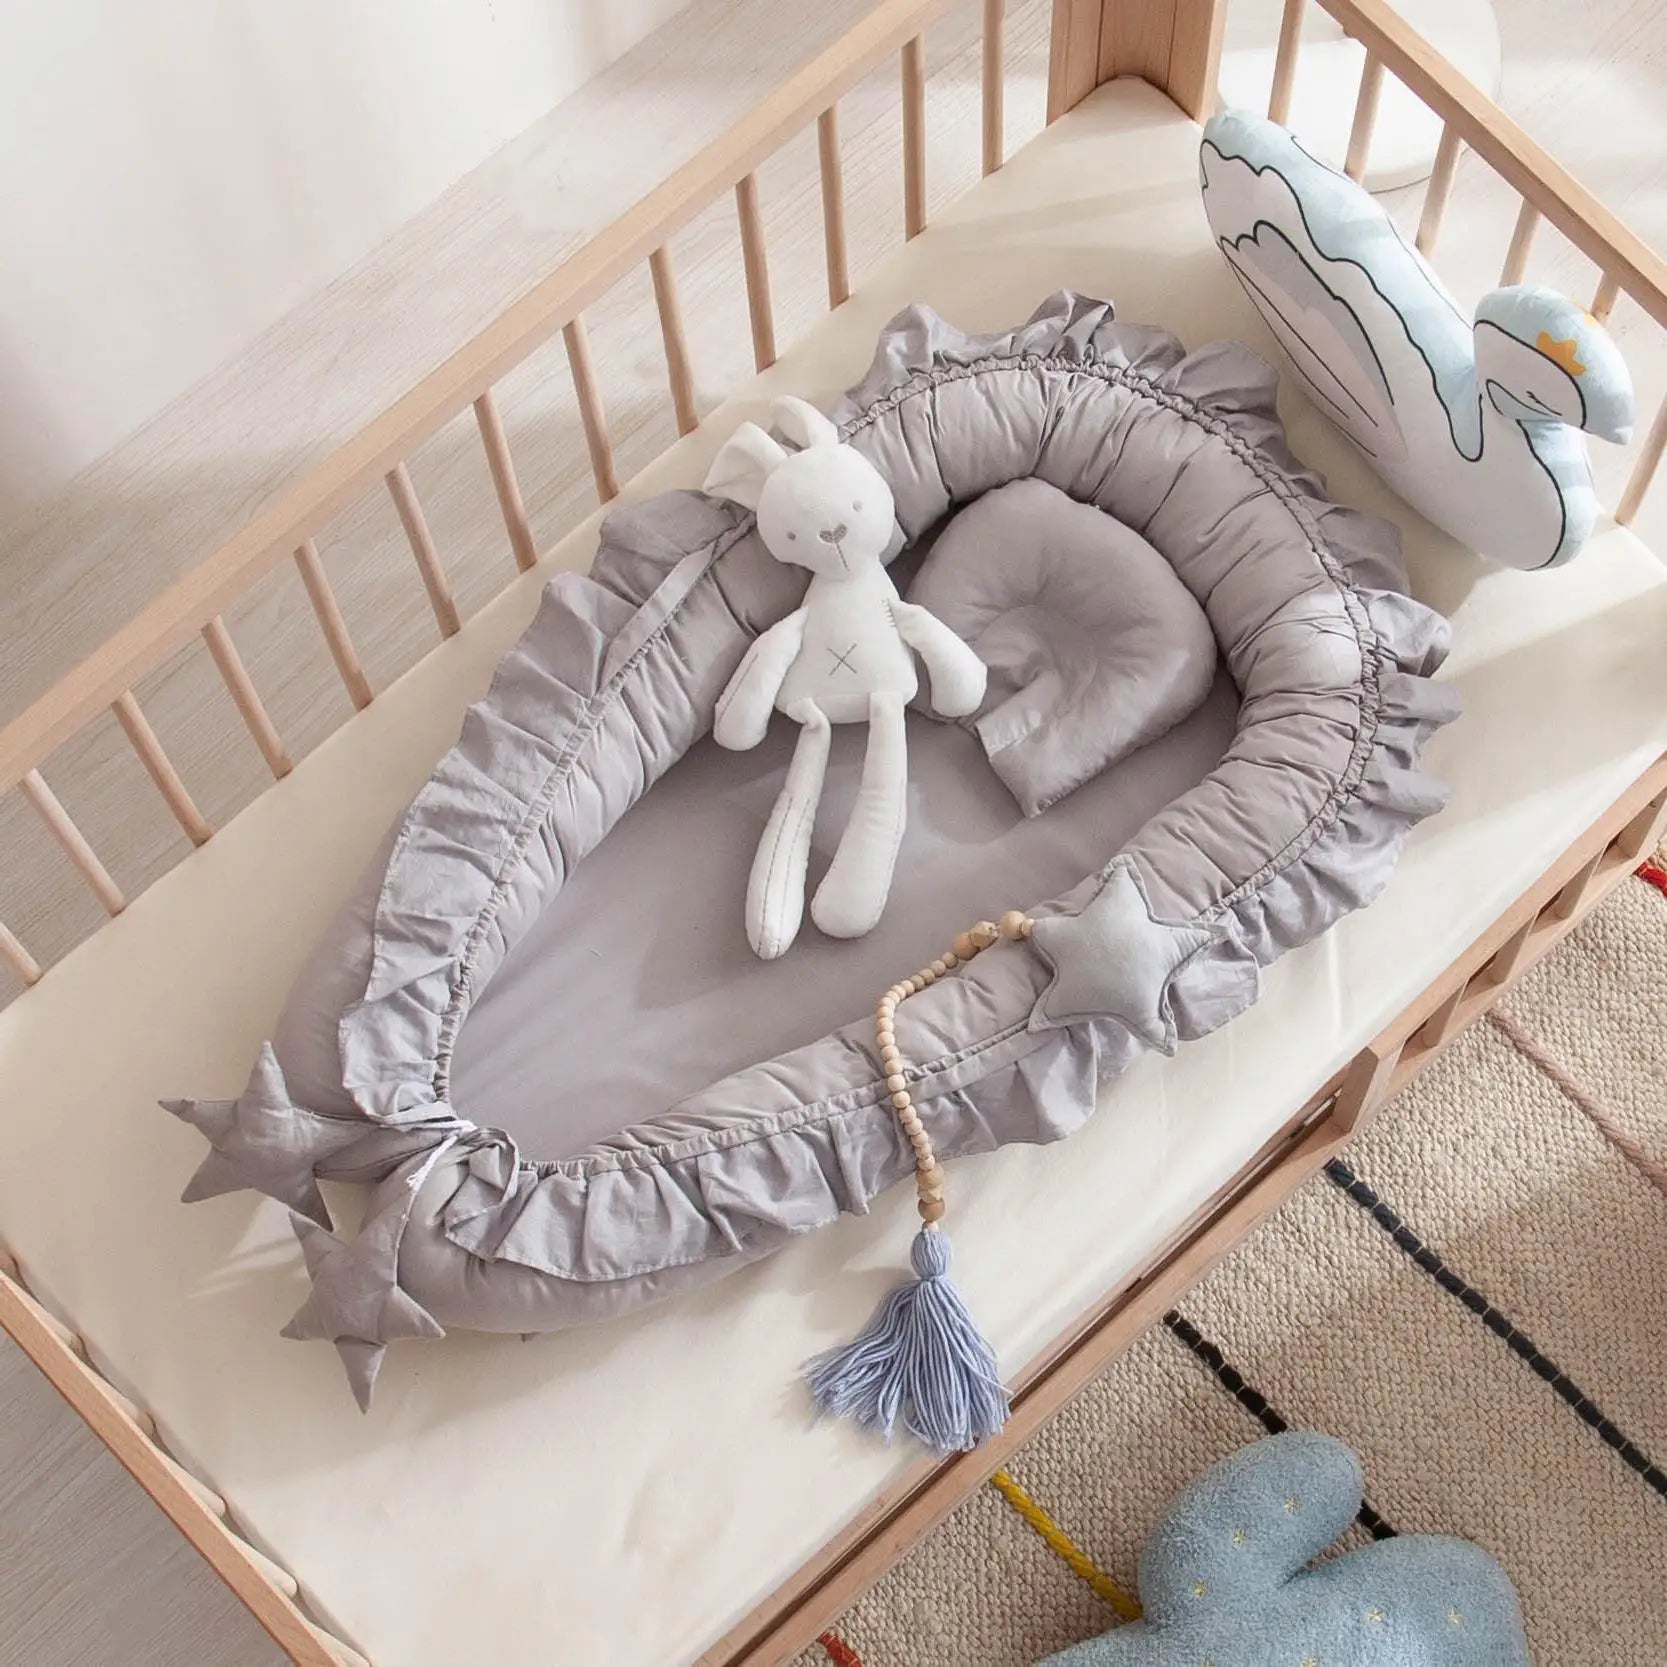 Nid de sommeil pour bébé, portable et douillet, assurant des nuits paisibles